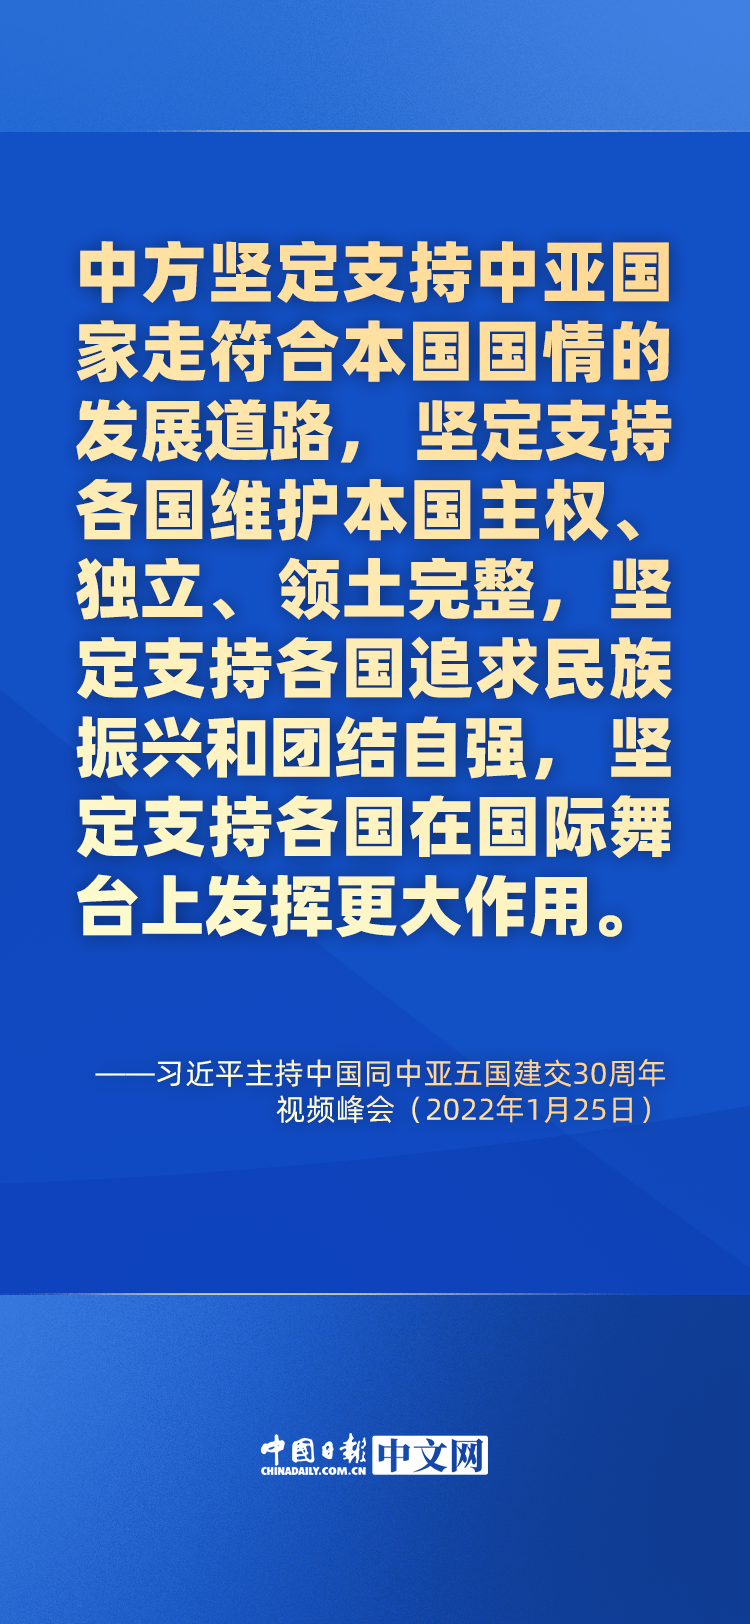 海报 | 习近平“解码”中国同中亚五国30年成功合作